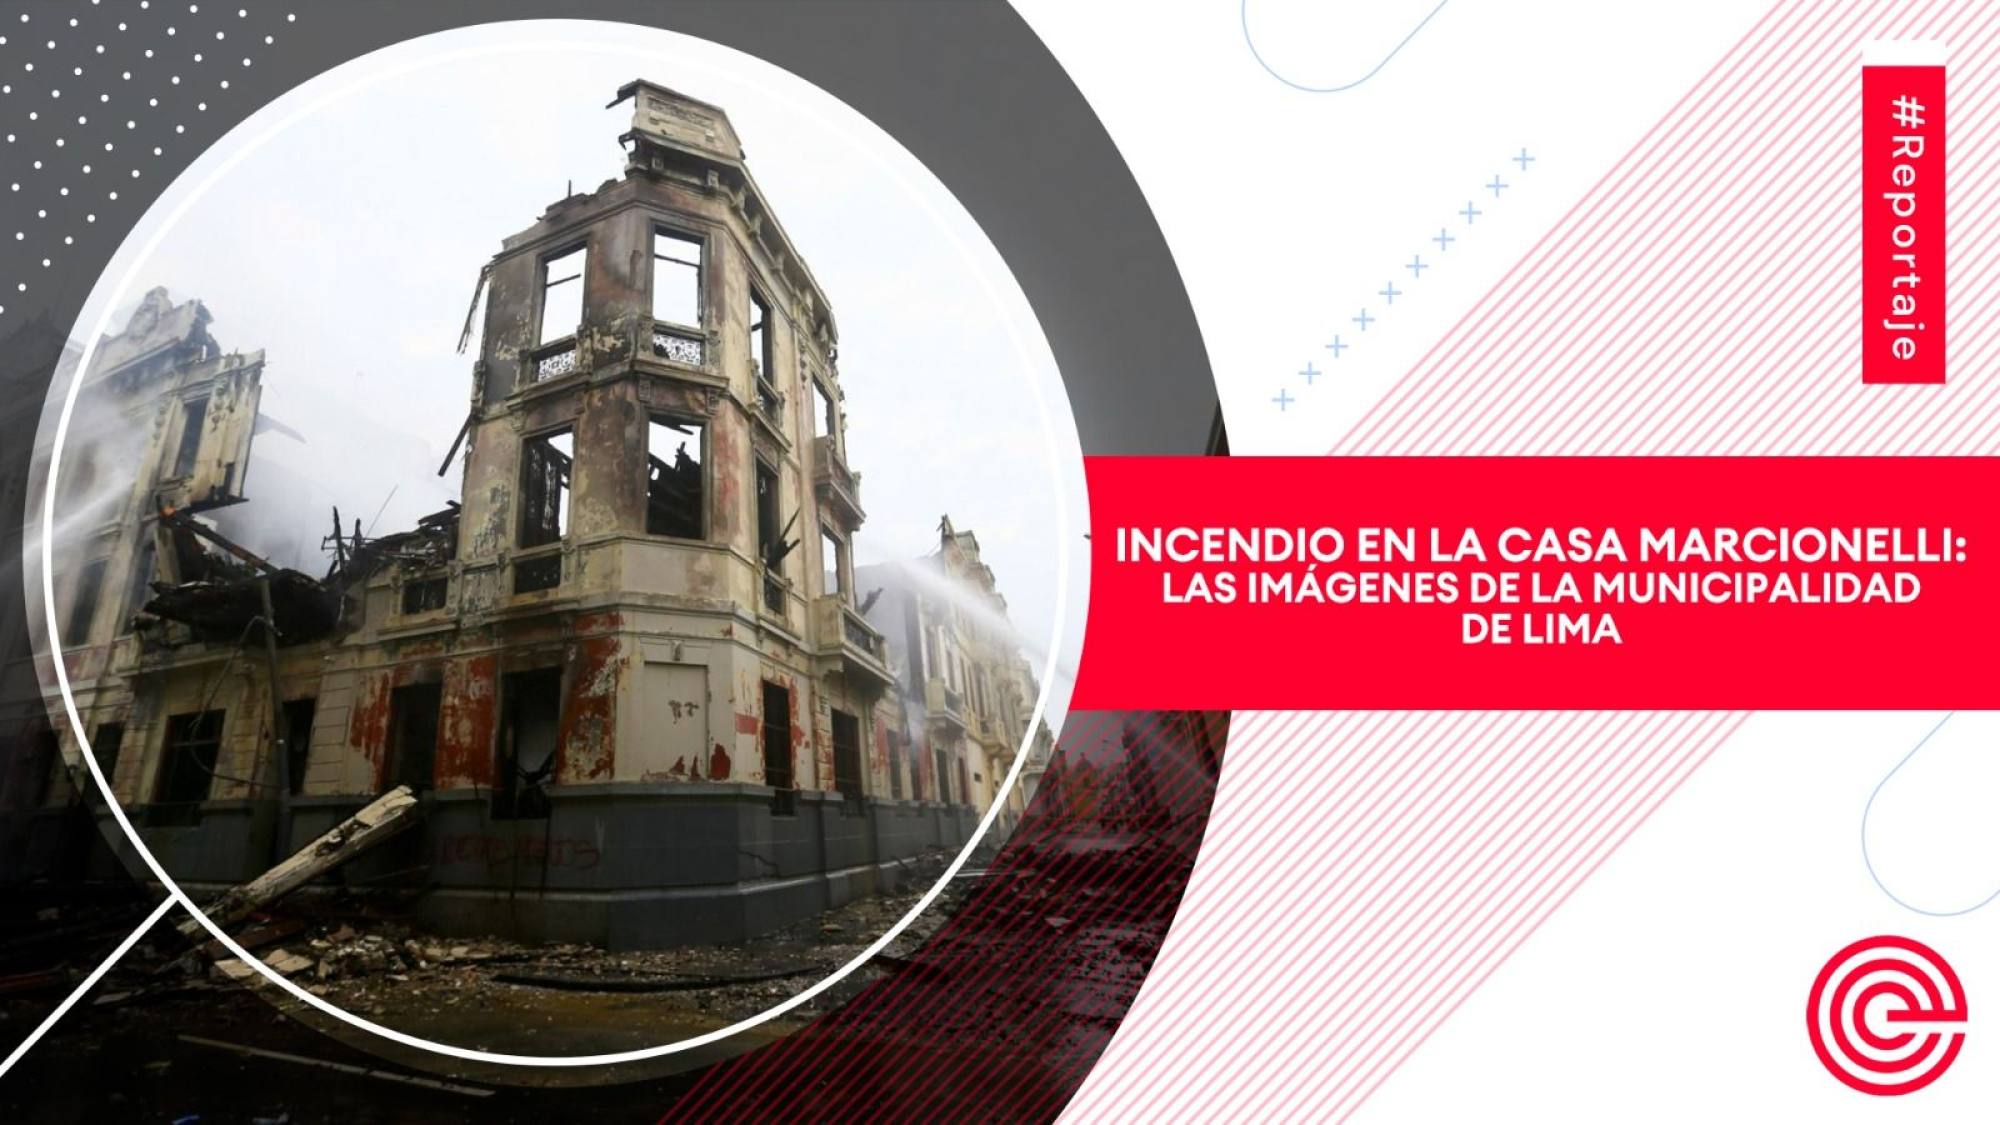 Incendio en la casa Marcionelli: Las imágenes de la Municipalidad de Lima, Epicentro TV